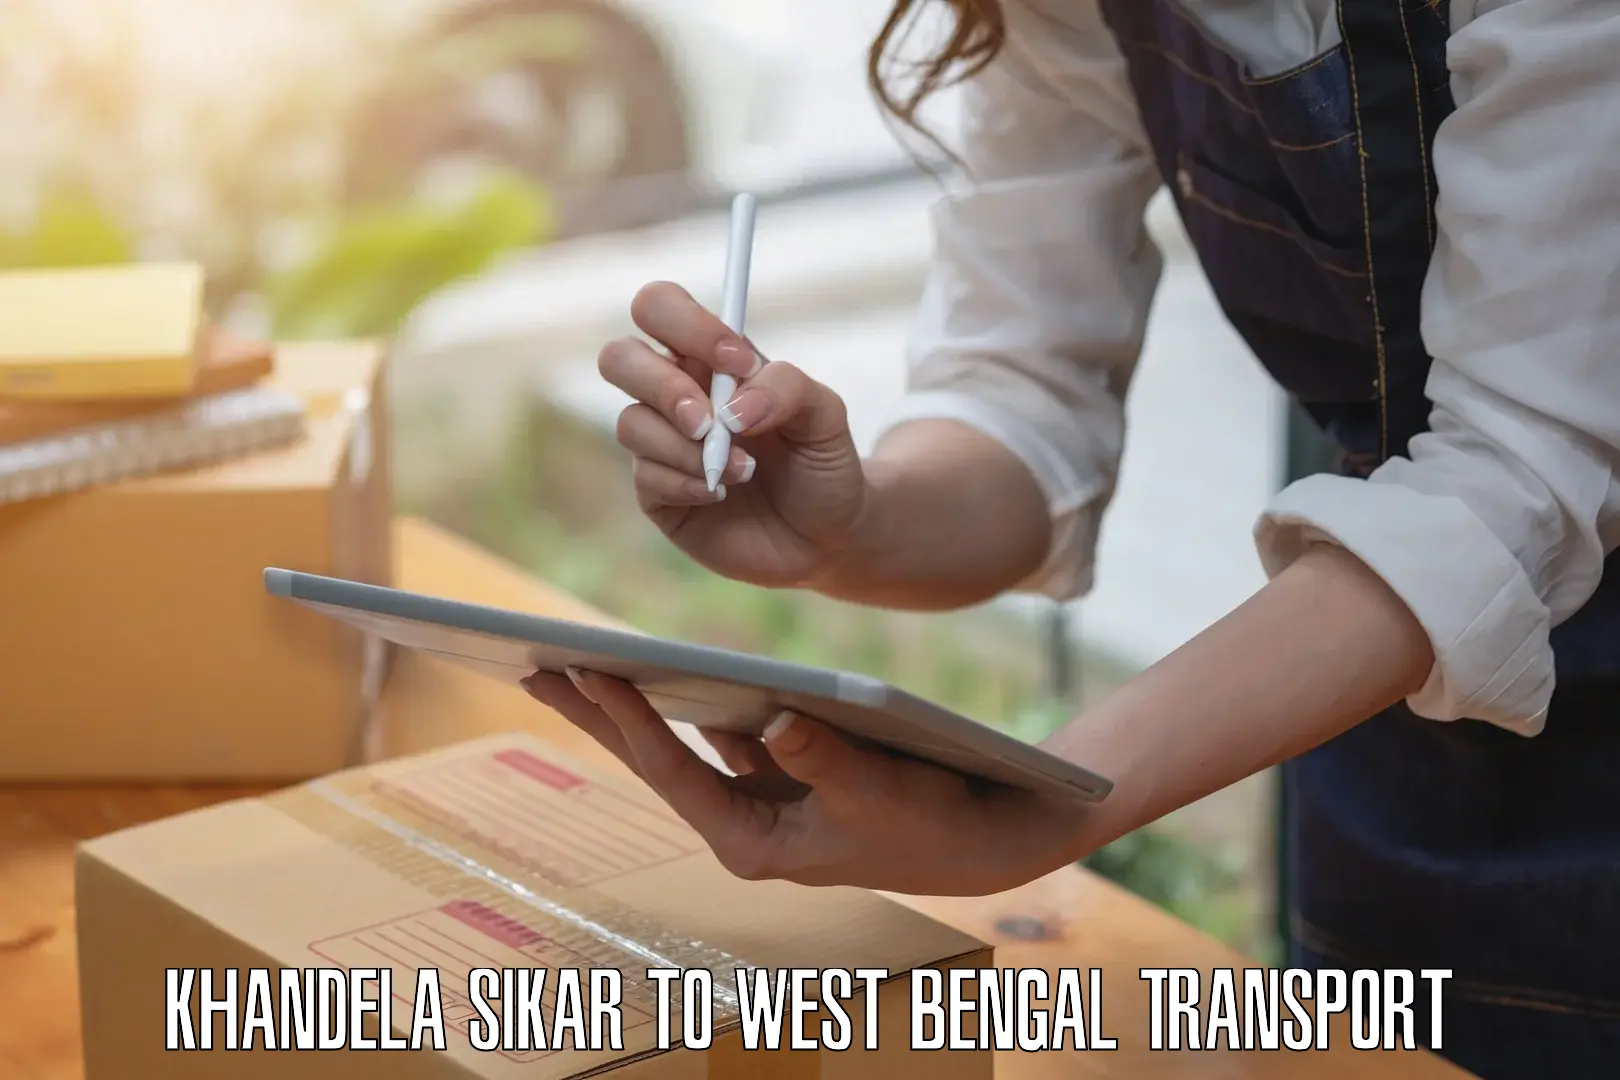 Daily parcel service transport Khandela Sikar to Mejia